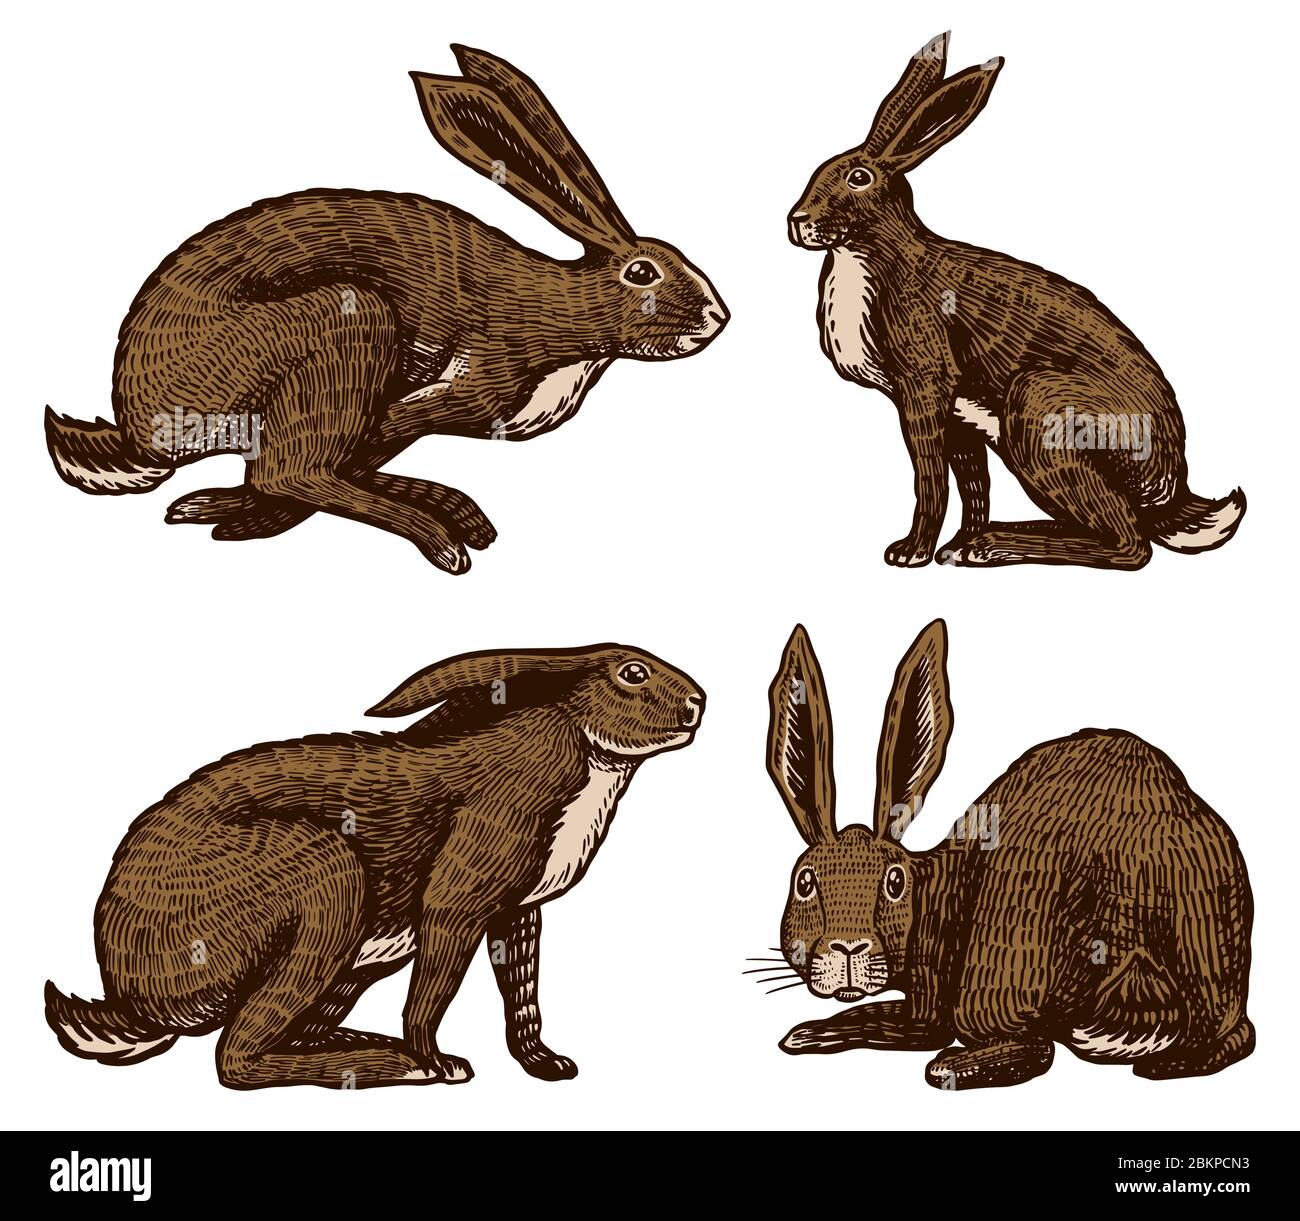 Wilde Hasen. Kaninchen sitzen und springen. Waldhasen oder coney. Handgezeichnet gravierte alte Skizze für T-Shirt, Tattoo oder Etikett oder Poster. Vektor Stock Vektor